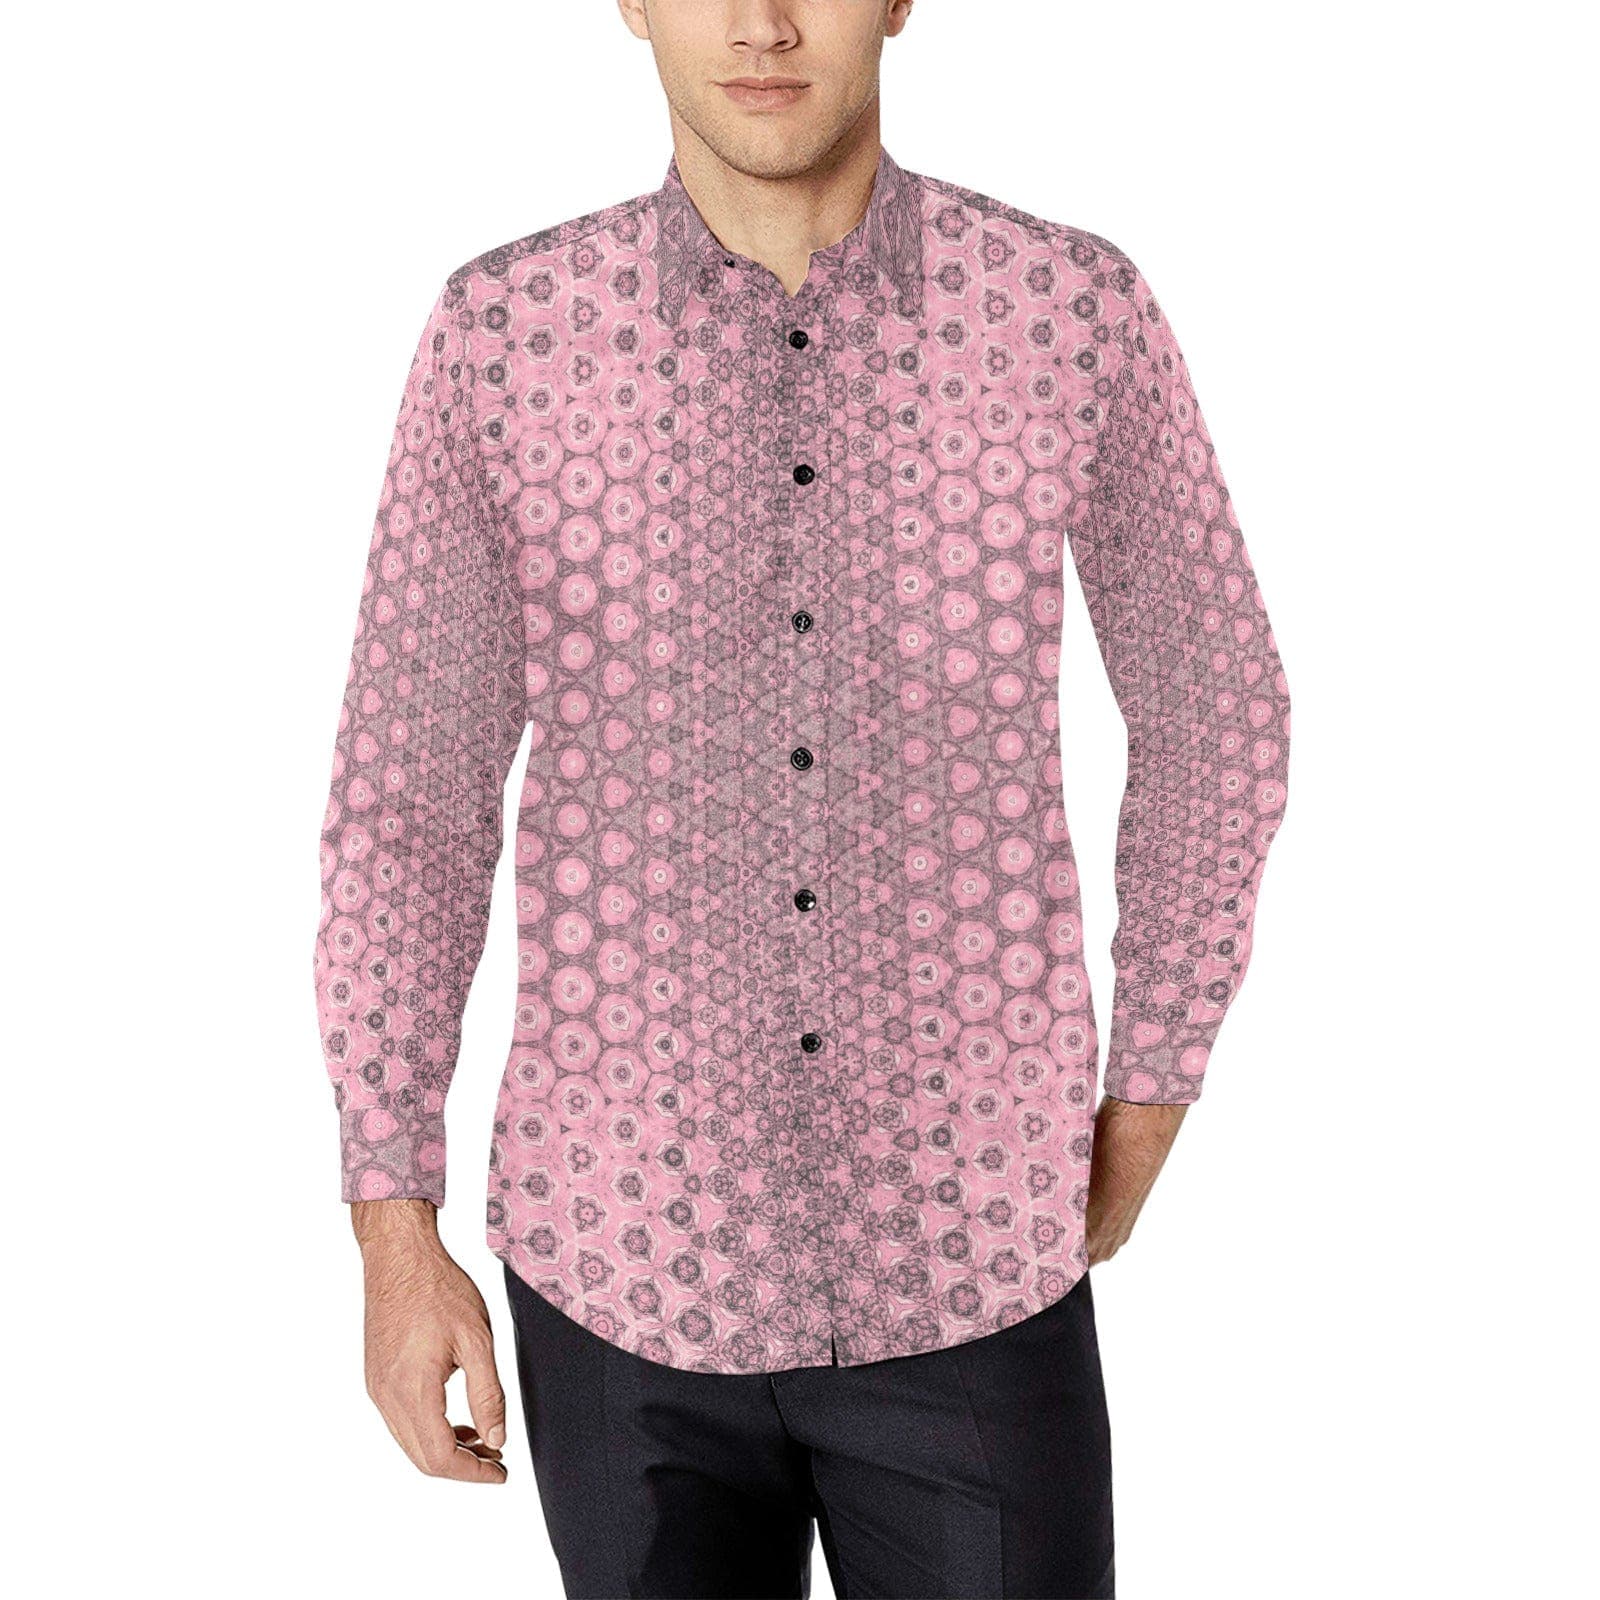 Pink Fantasy Patterned Comfort Fit Shirt for Men Long Sleeve Shirt (Without Pocket)